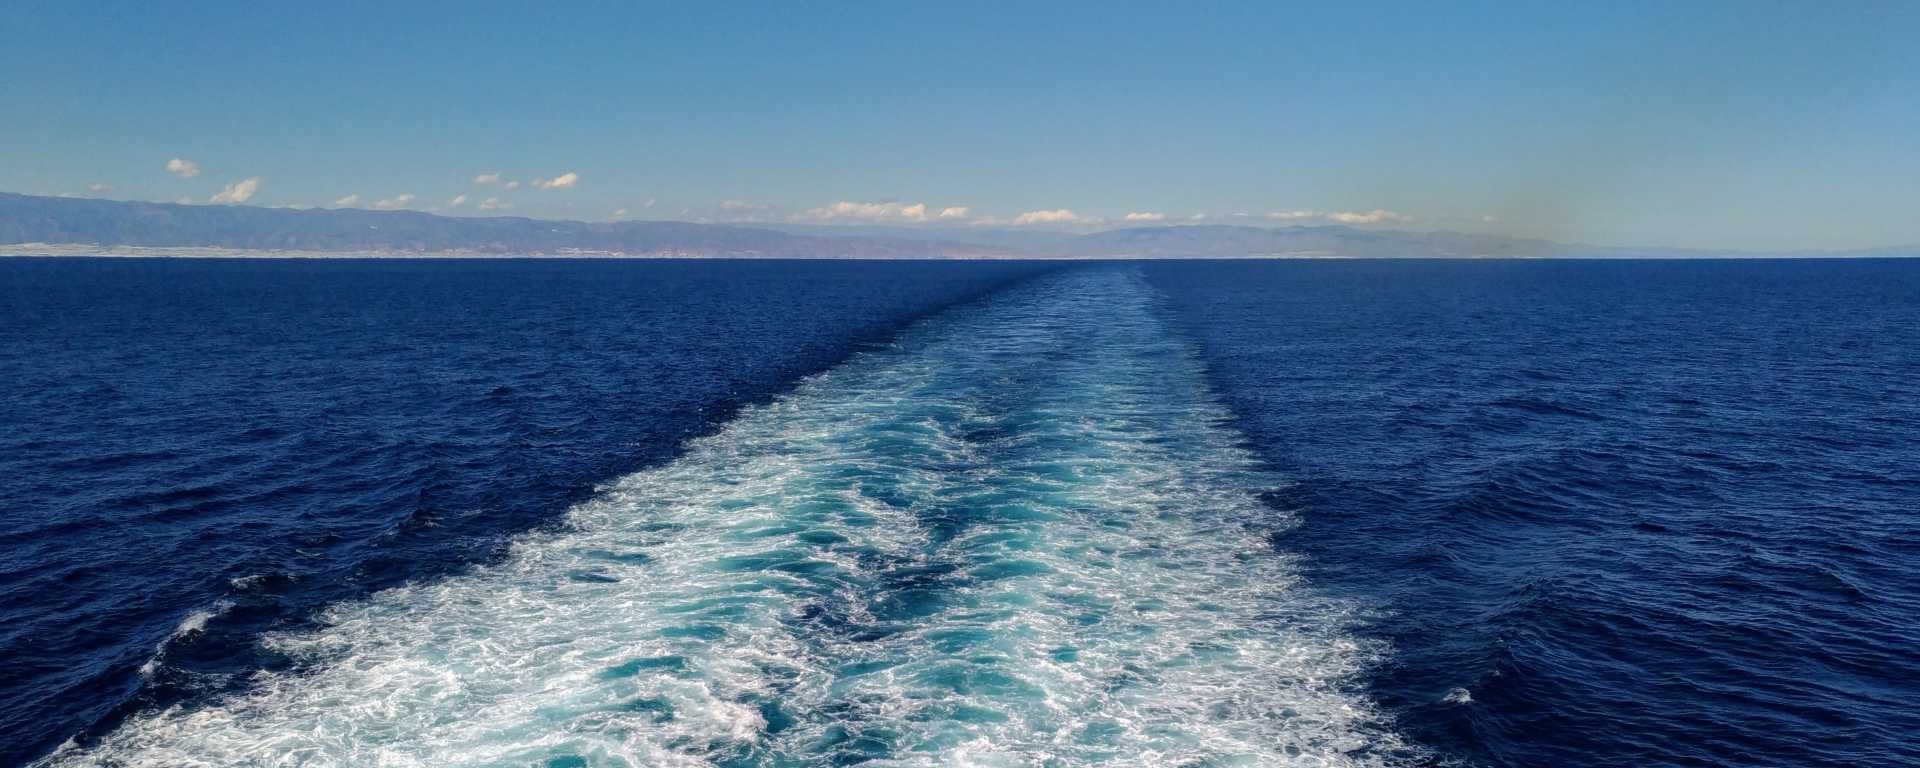 Ferrys et lignes maritimes depuis Sète vers la Méditerranée